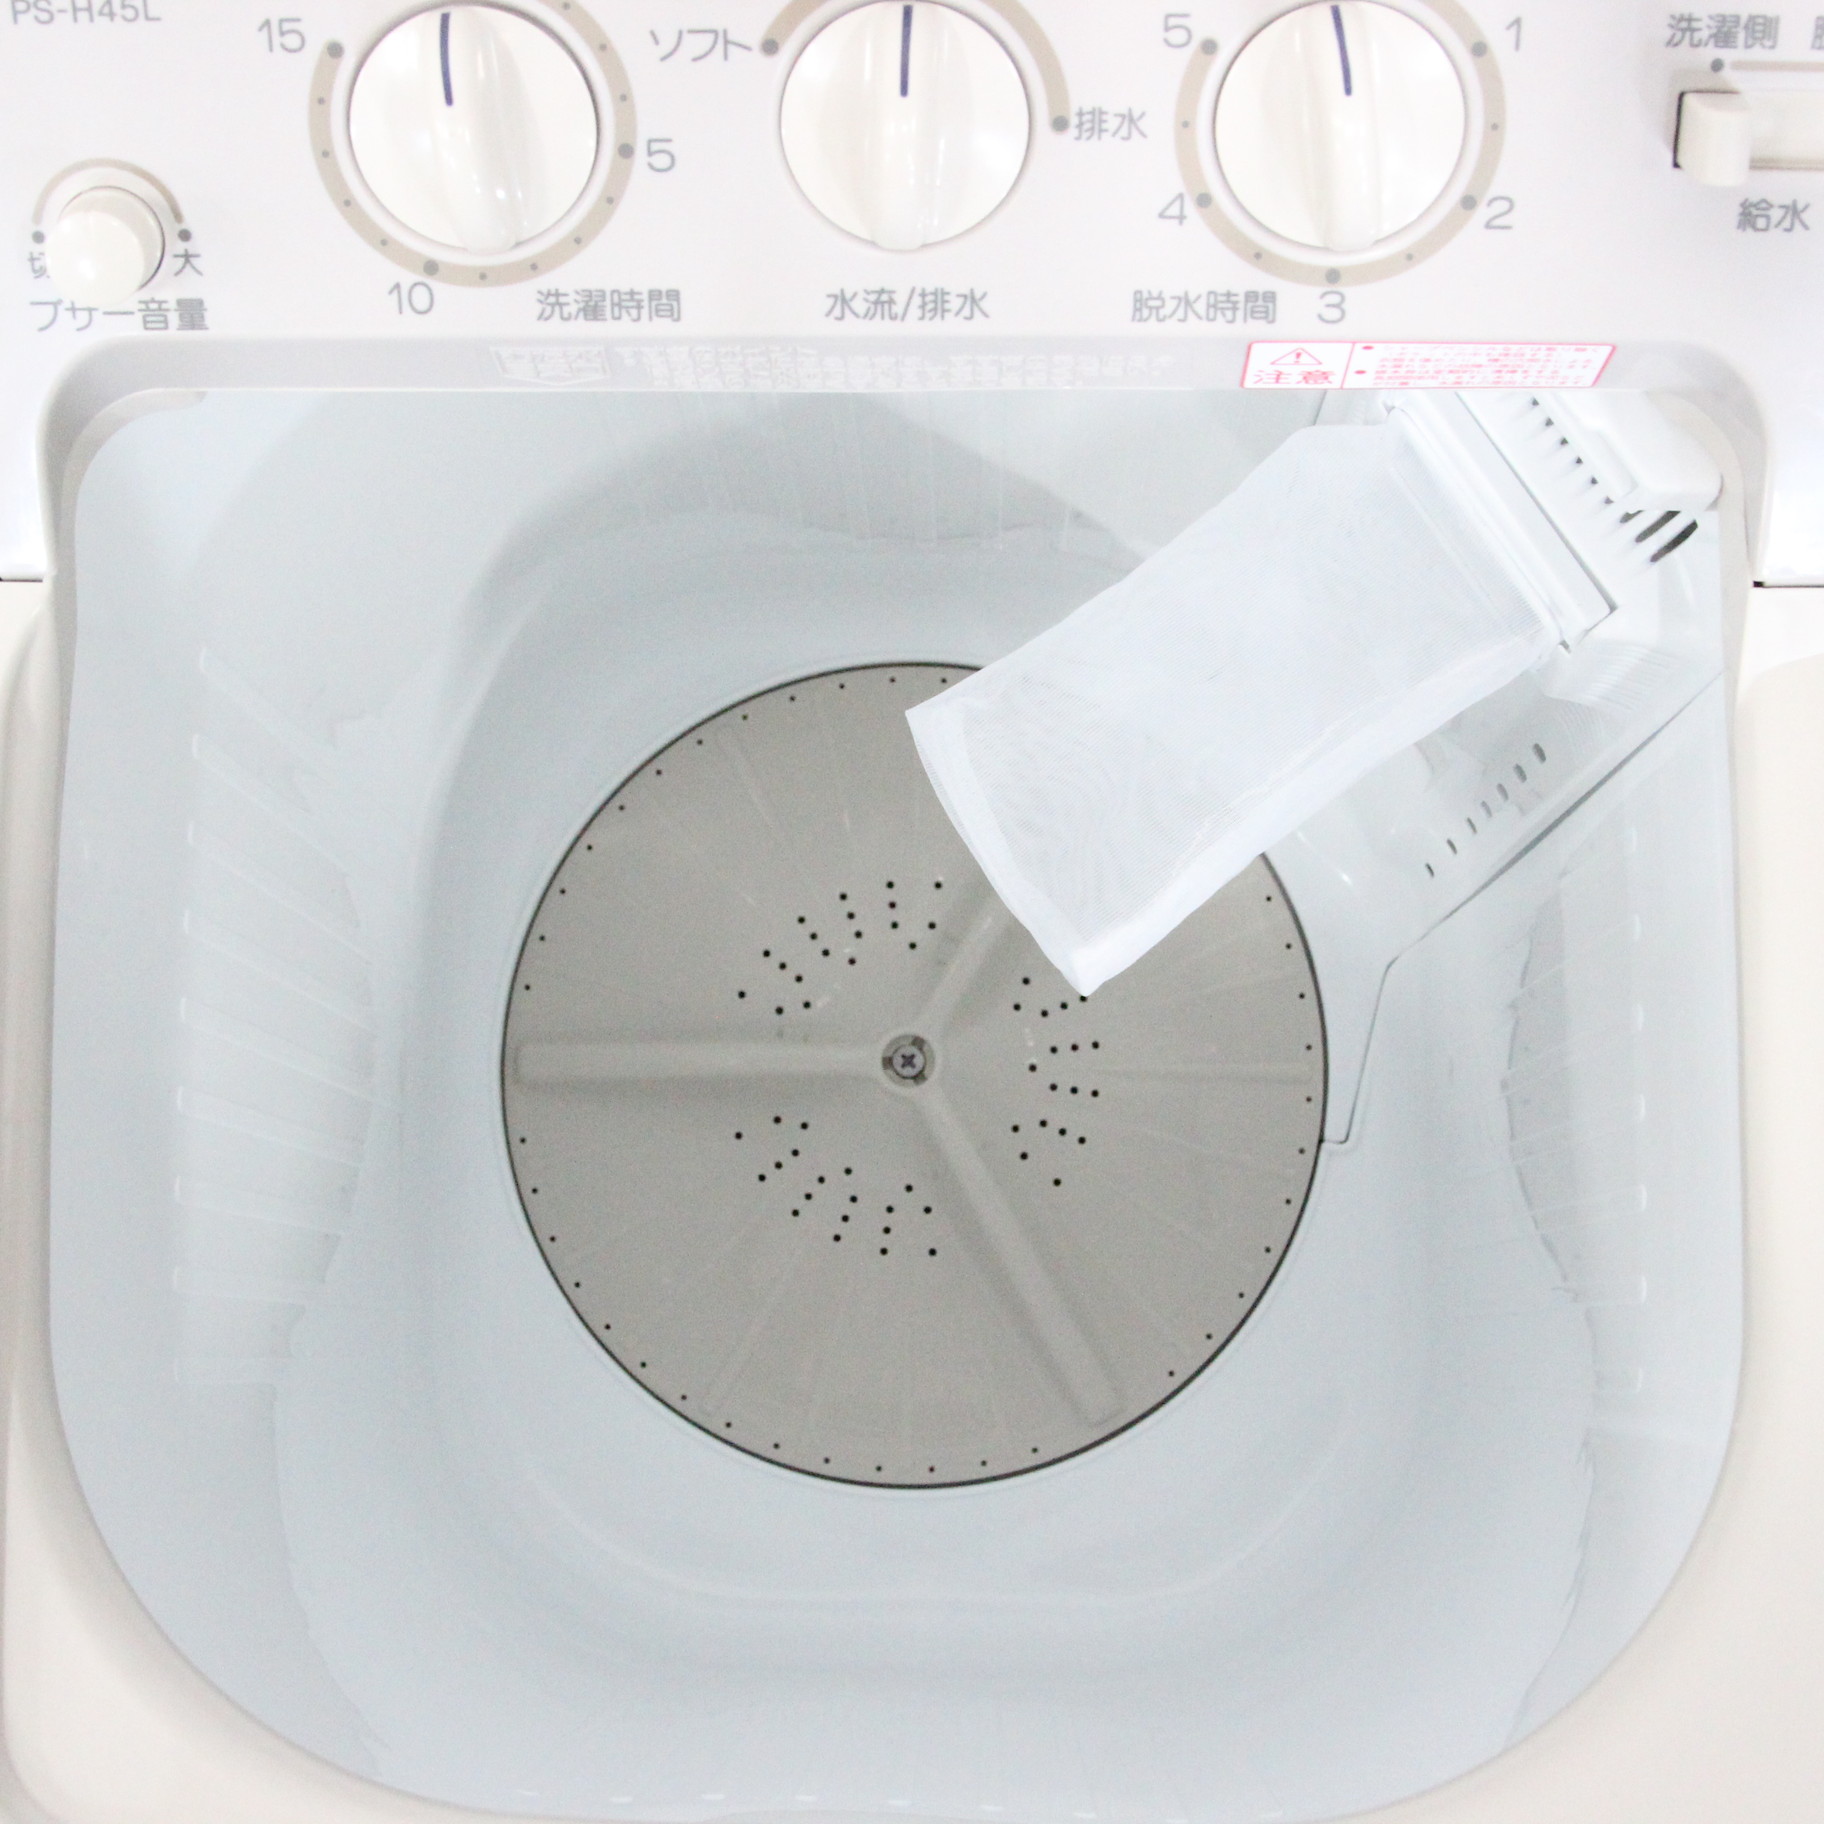 〔展示品〕2槽式洗濯機 青空 パインベージュ PS-H45L-CP ［洗濯4.5kg ／乾燥機能無 ／上開き］